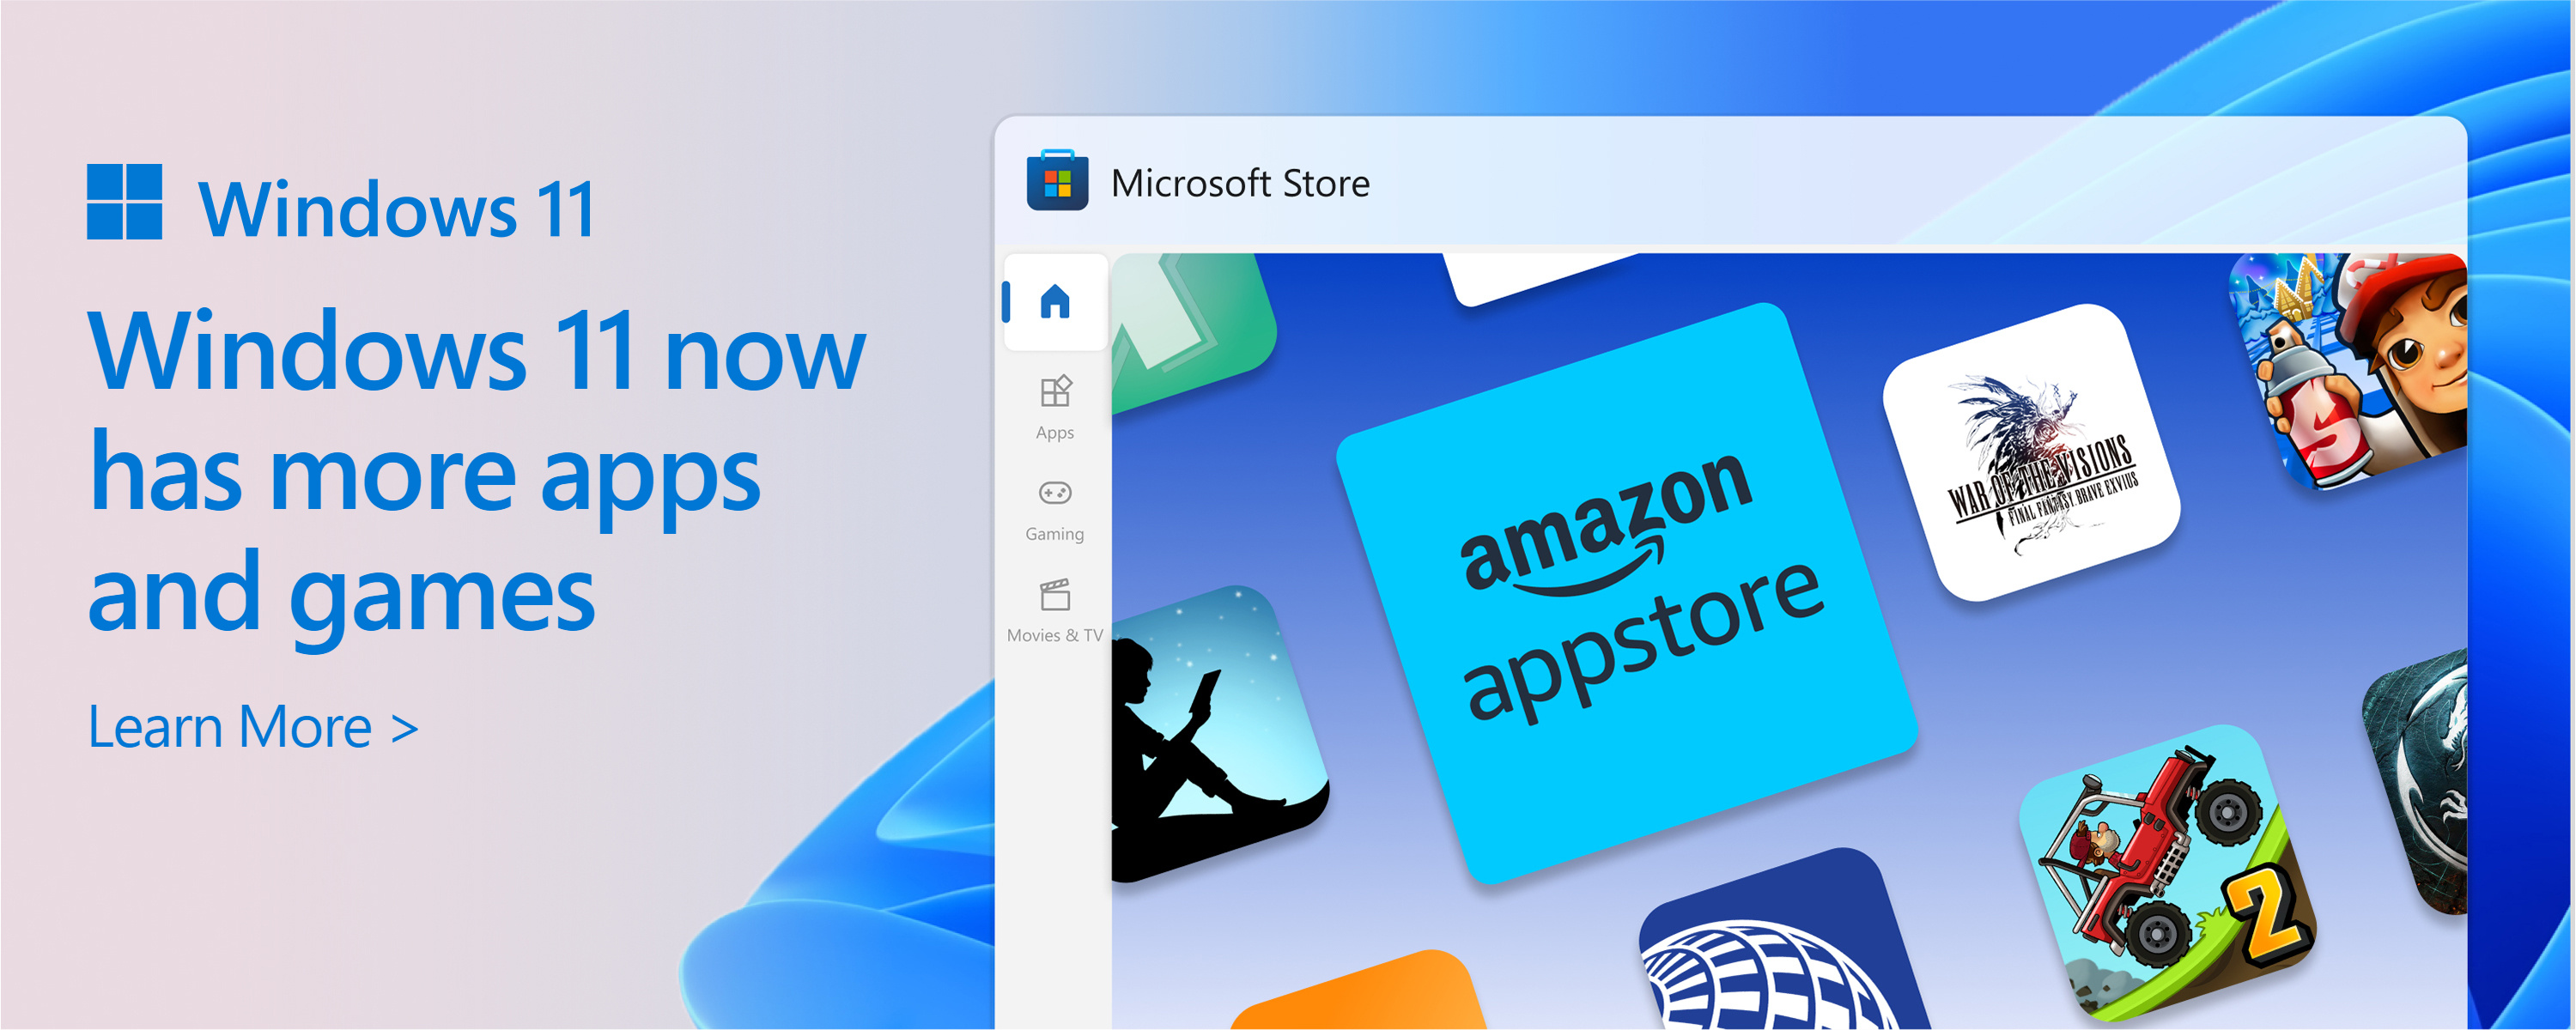 Képernyőkép a Microsoft Store-ról a következő szöveggel: A Microsoft Store katalógusa növekszik. Windows 11 több alkalmazást és játékot kínál, amelyekre szüksége van.